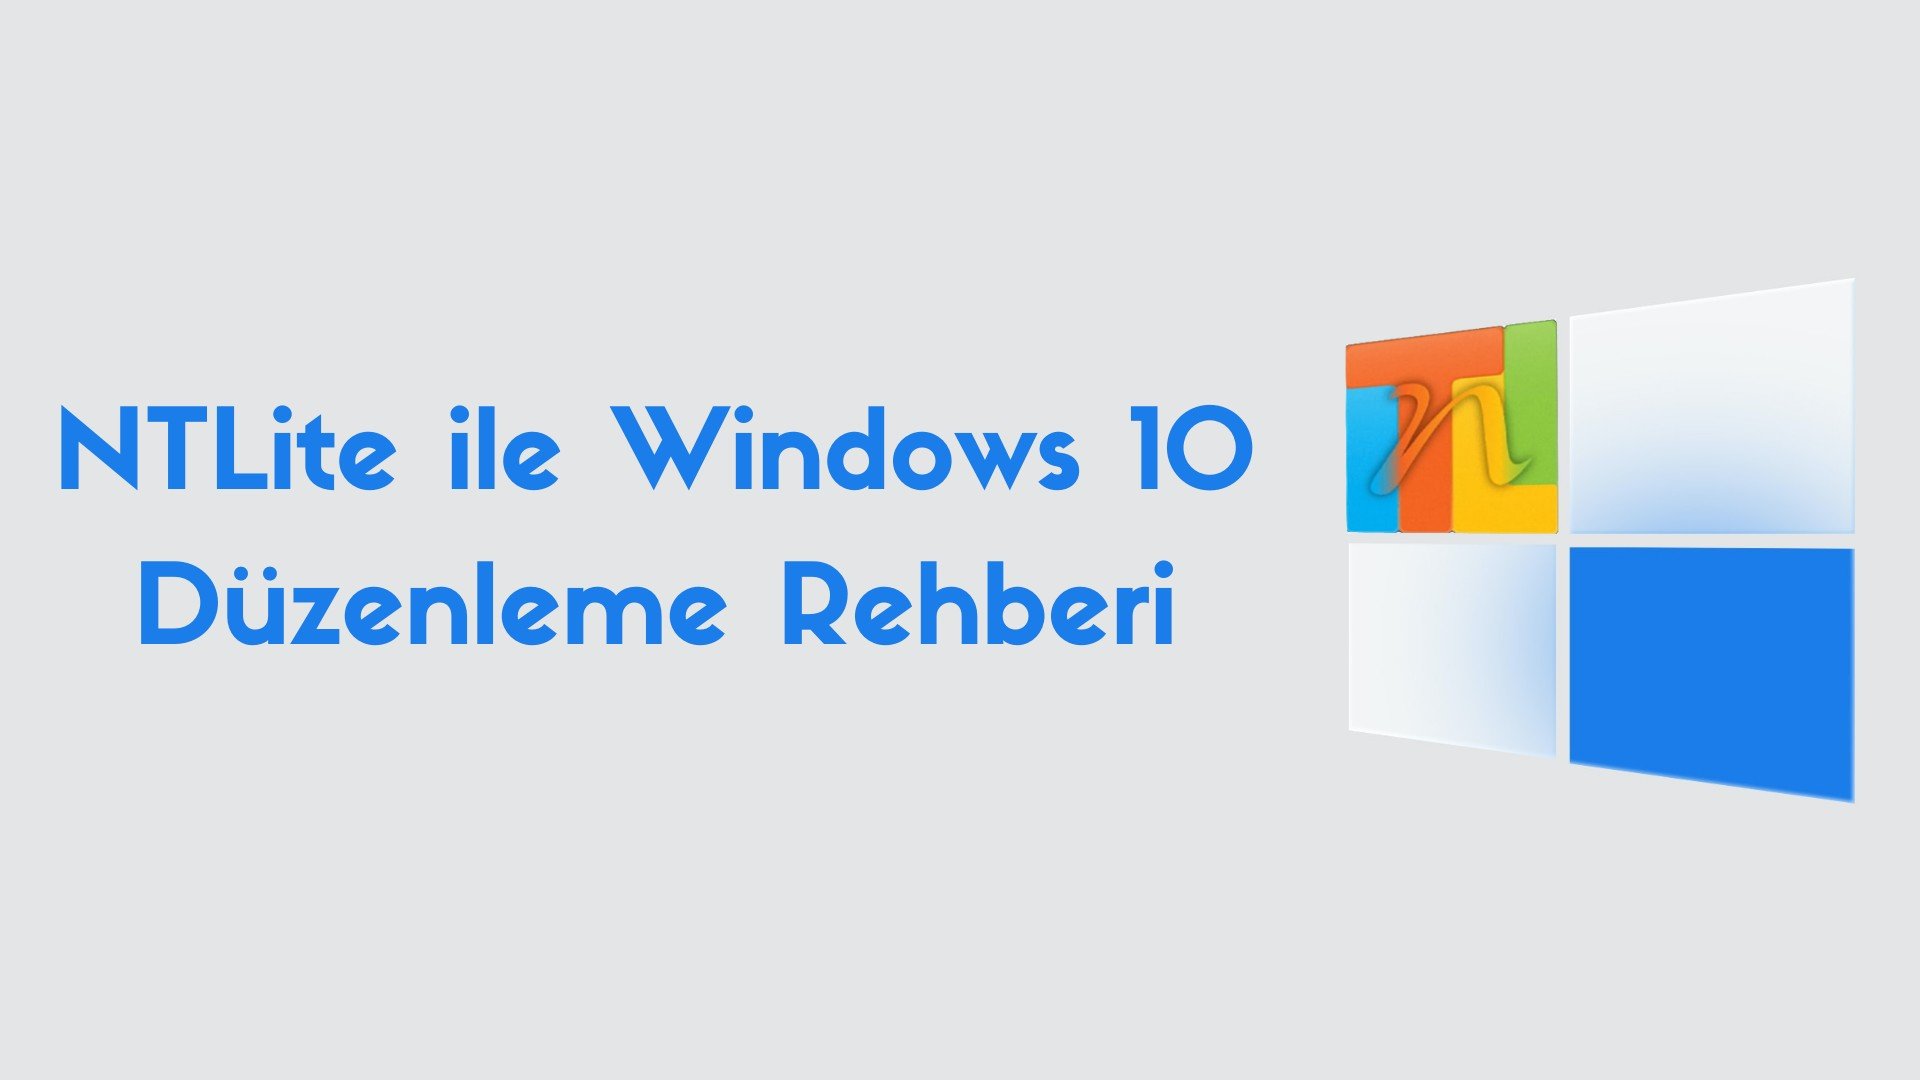 NTLite ile Windows 10 Düzenleme Rehberi